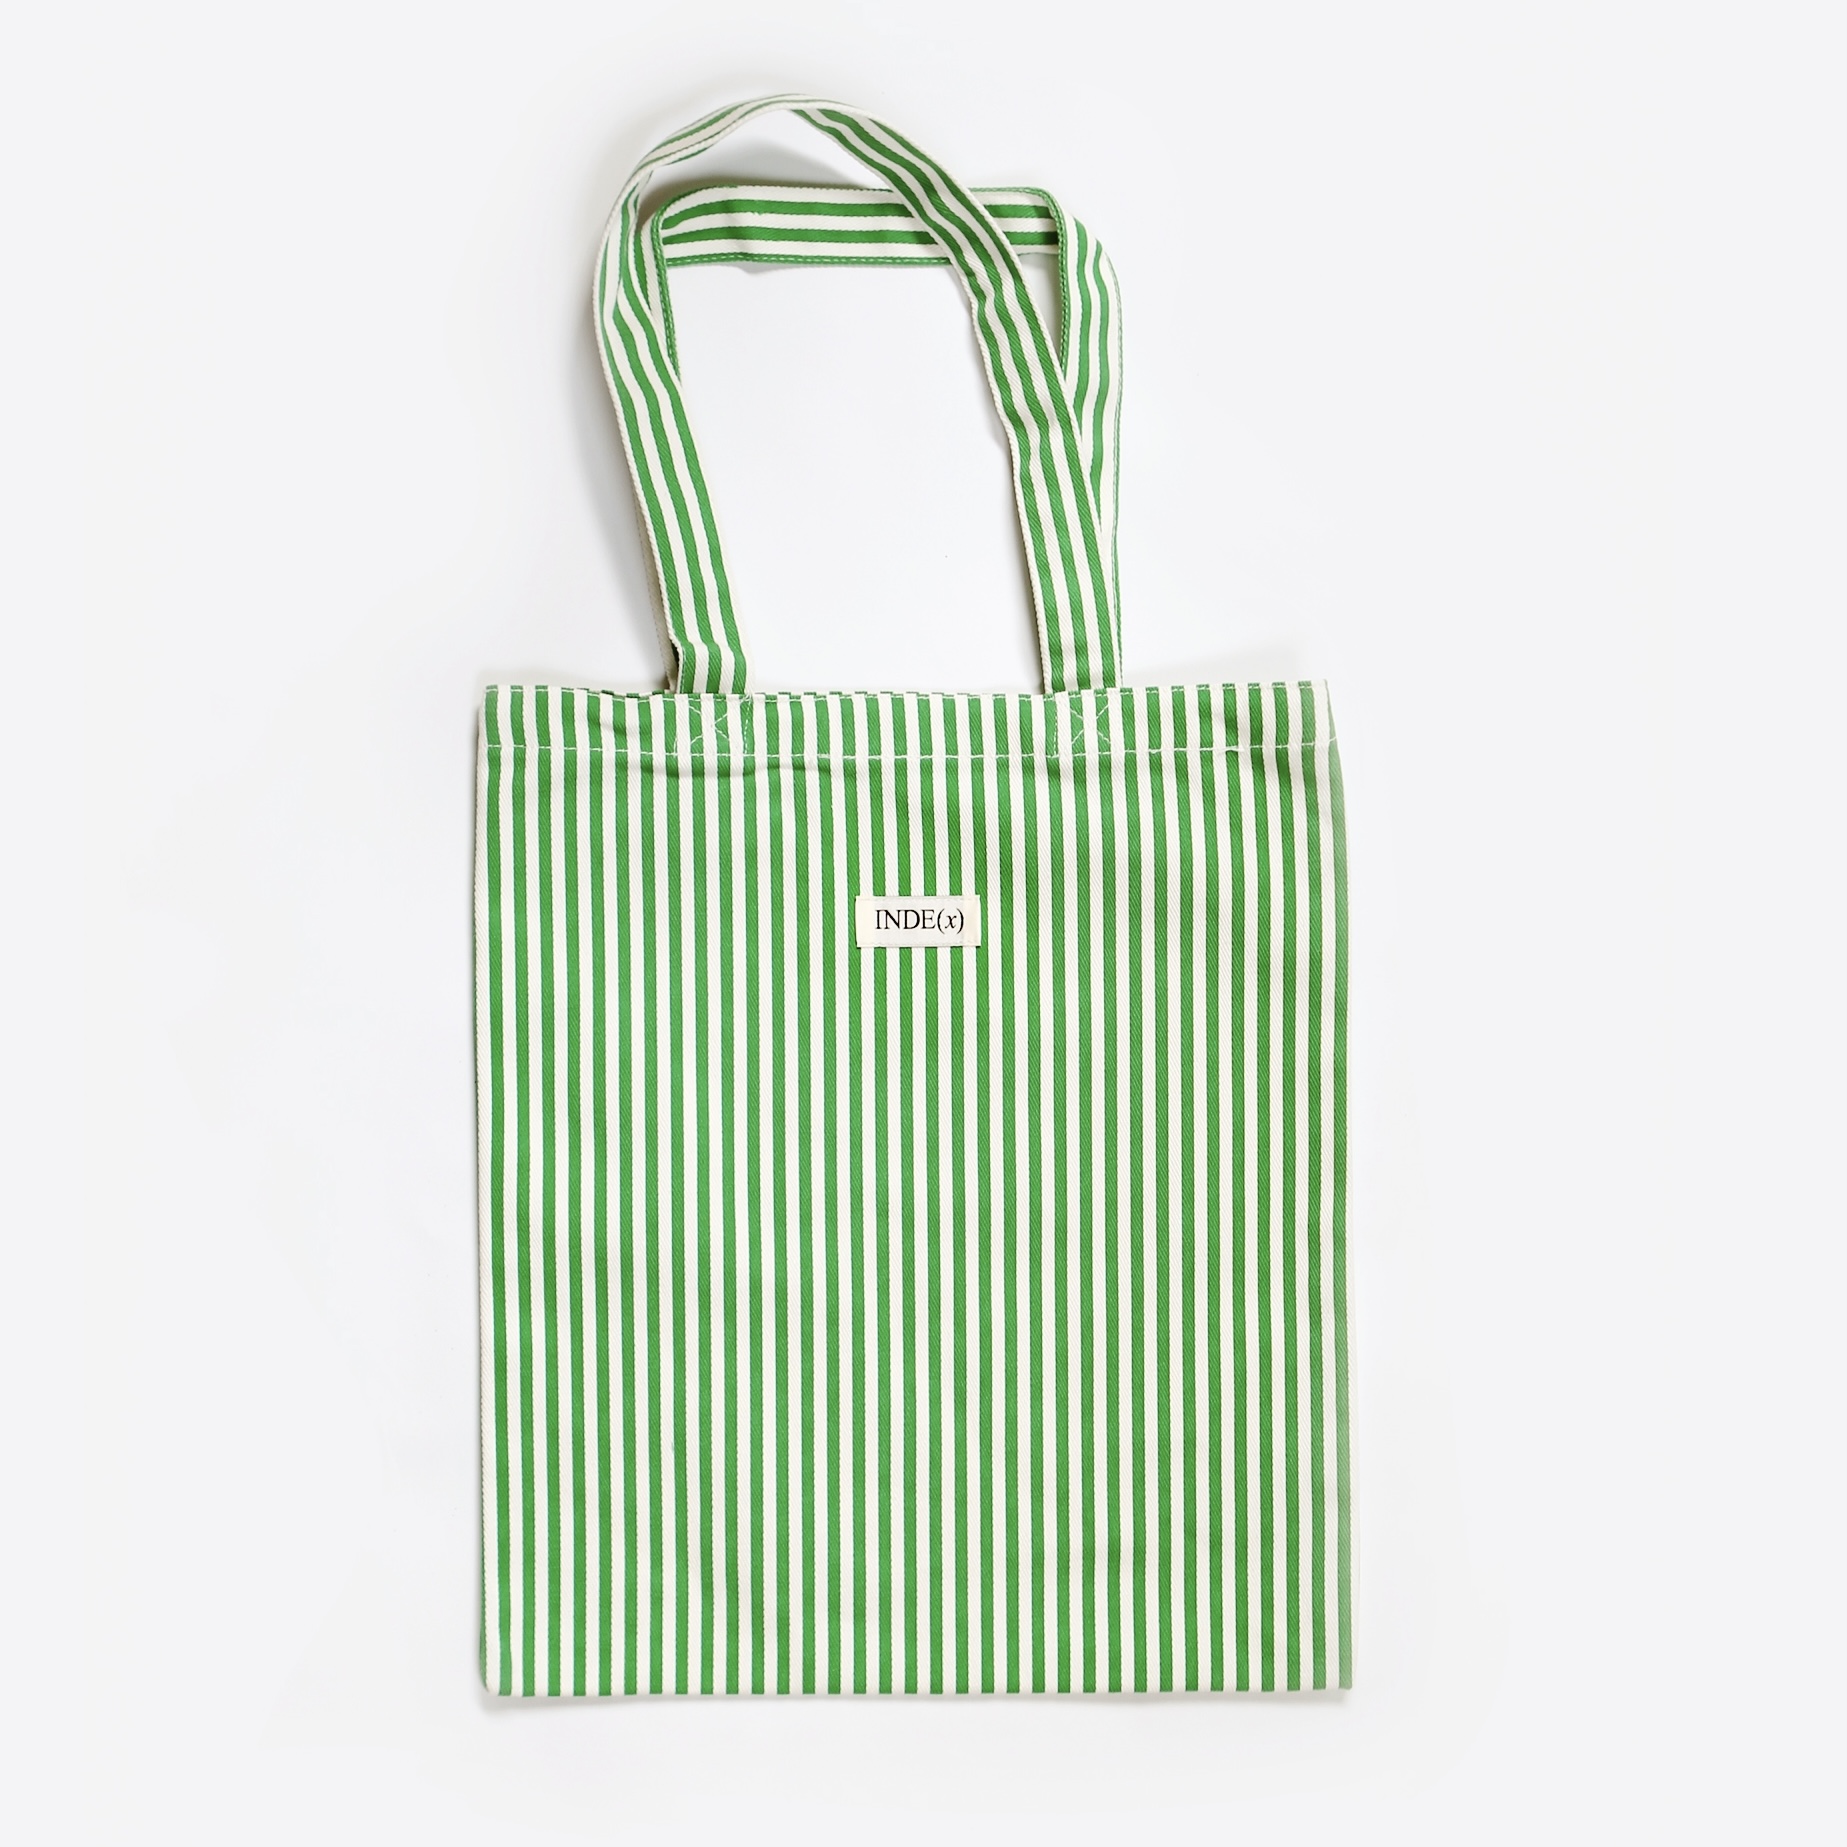 Green Straw Bag